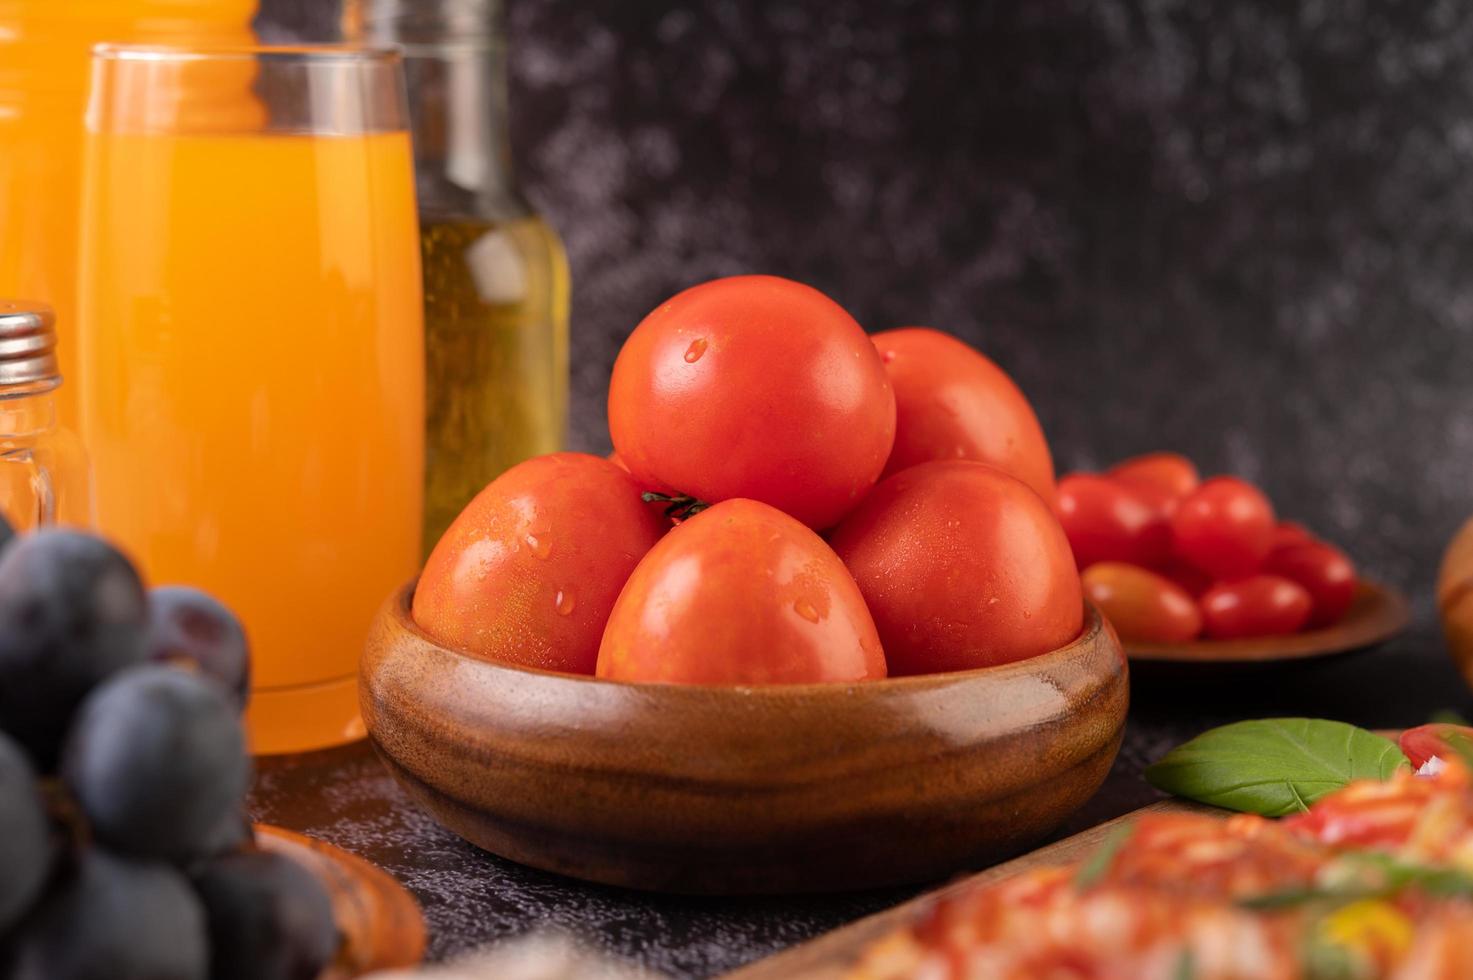 pomodori freschi, uva e succo d'arancia in un bicchiere foto